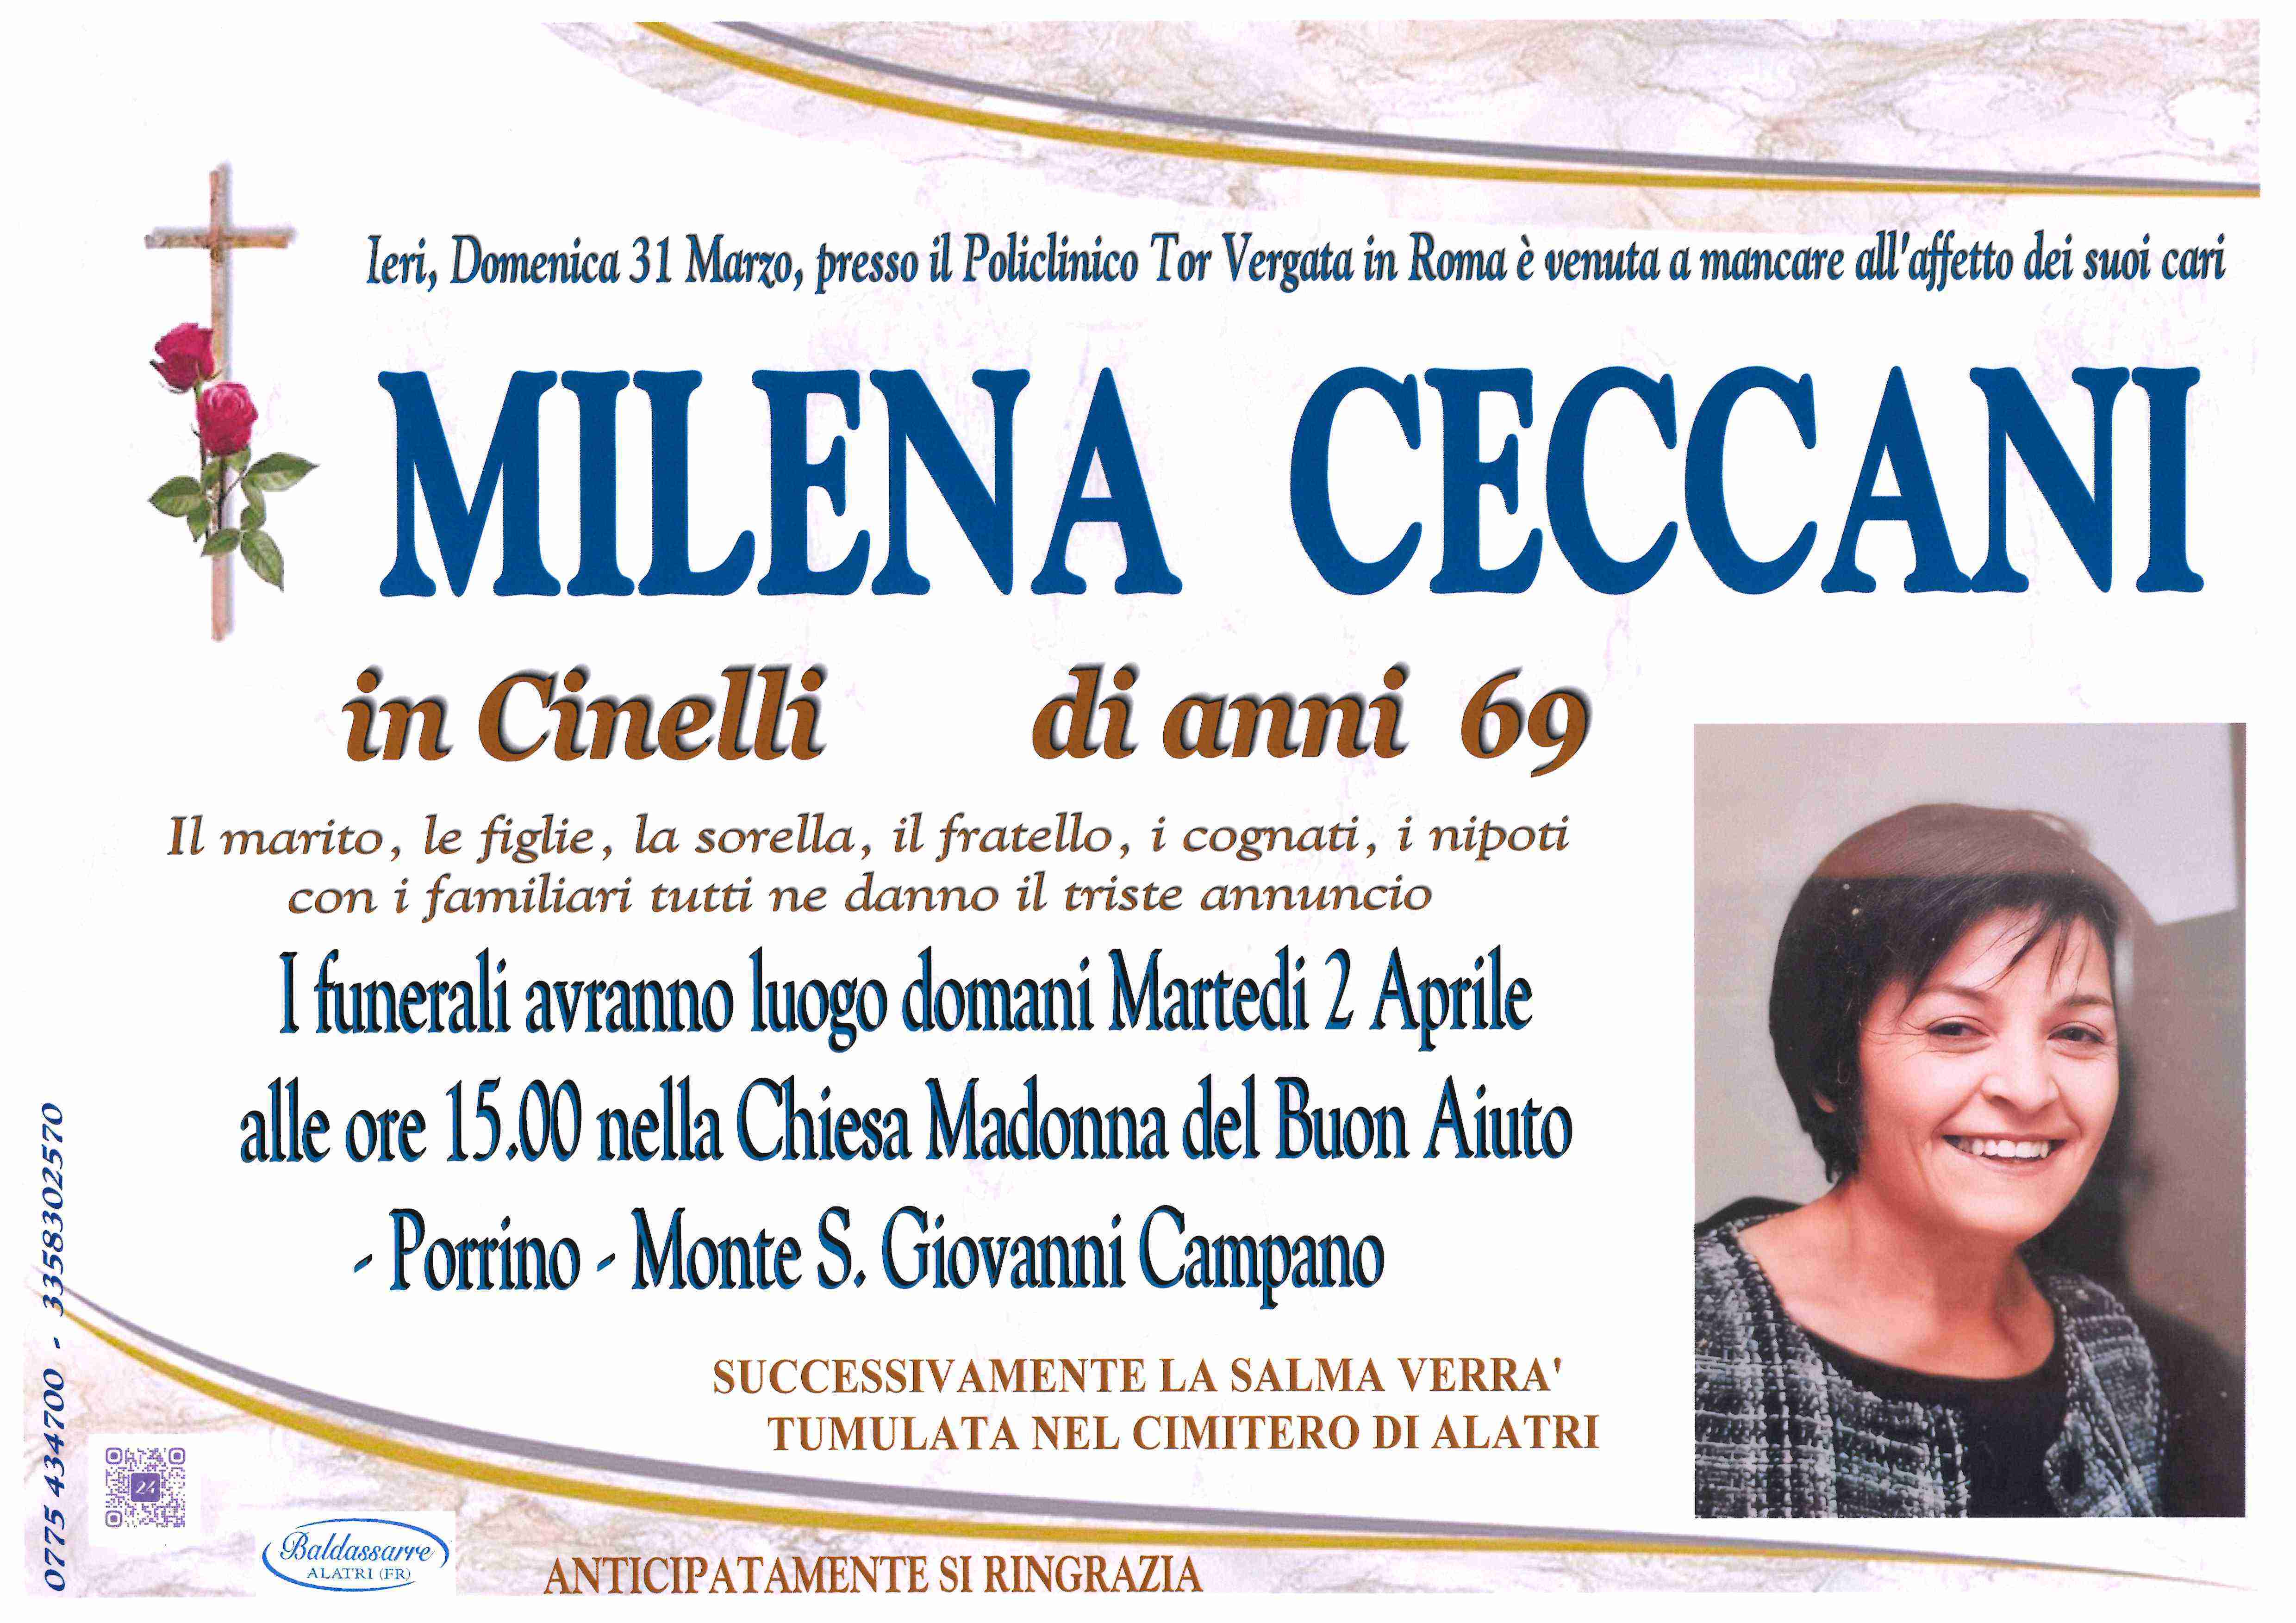 Milena Ceccani